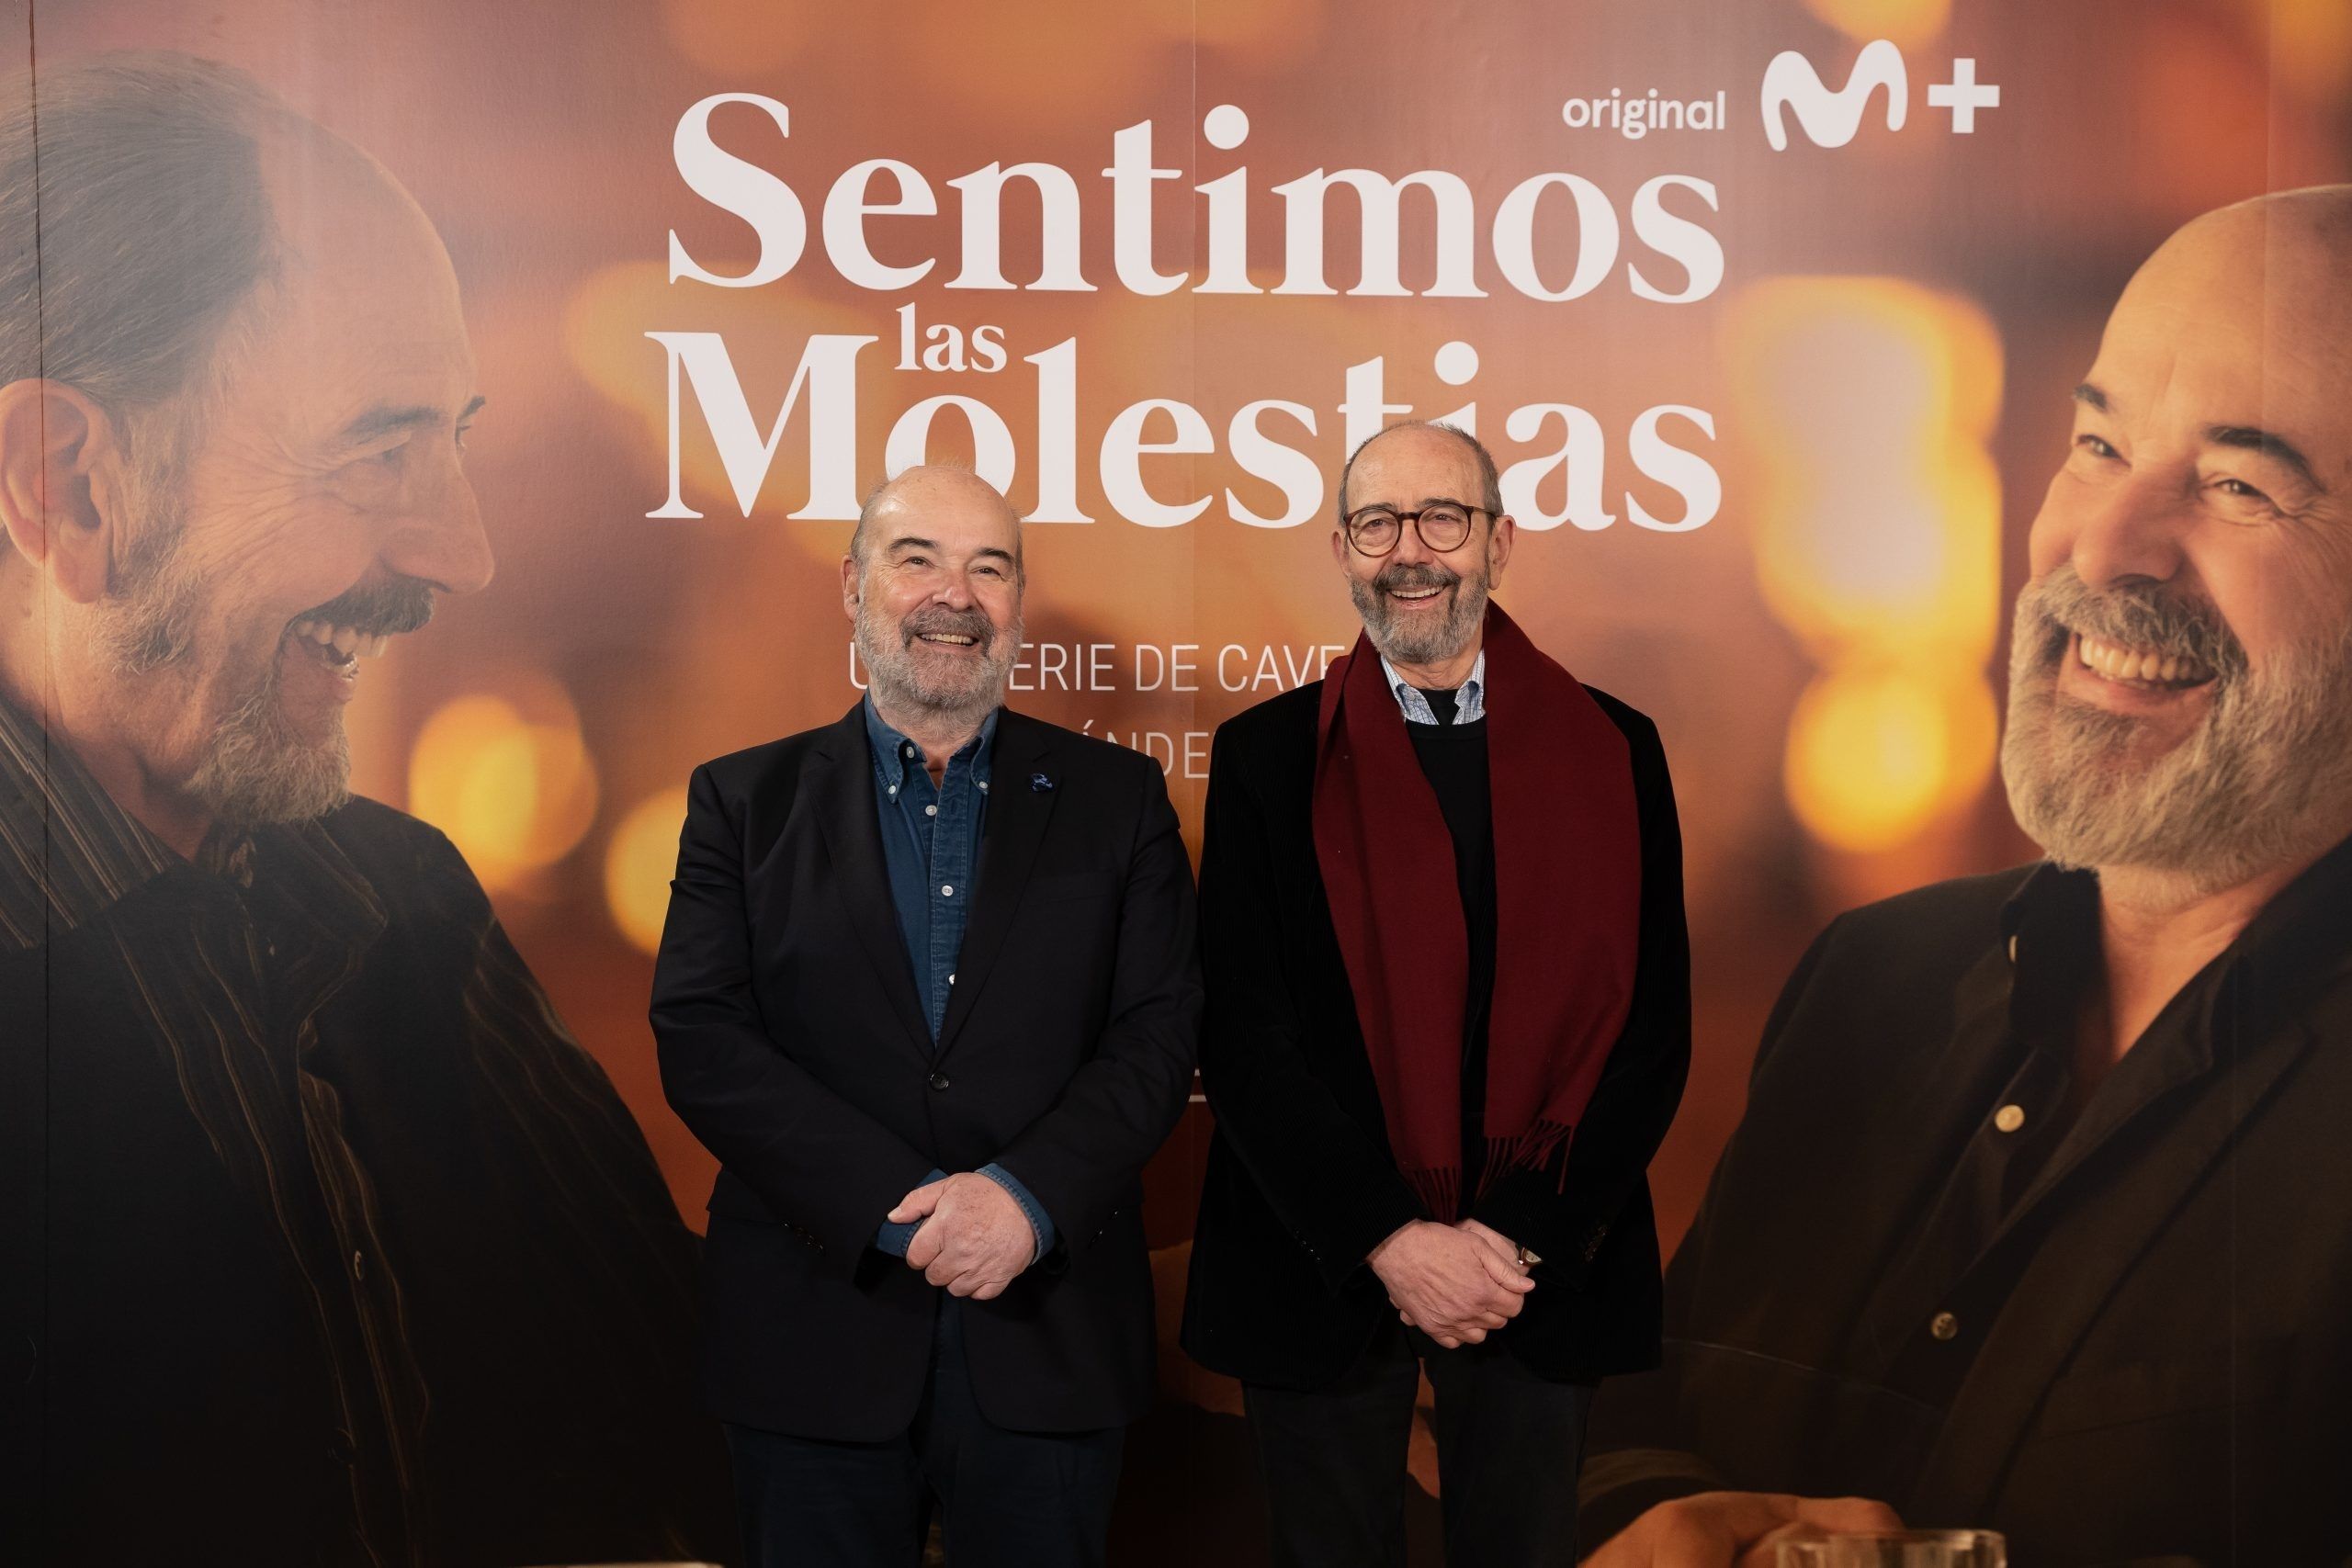 Resines y Miguel Rellán protagonizan 'Sentimos las molestias': "Que la muerte te pille viviendo". Foto: Europa Press